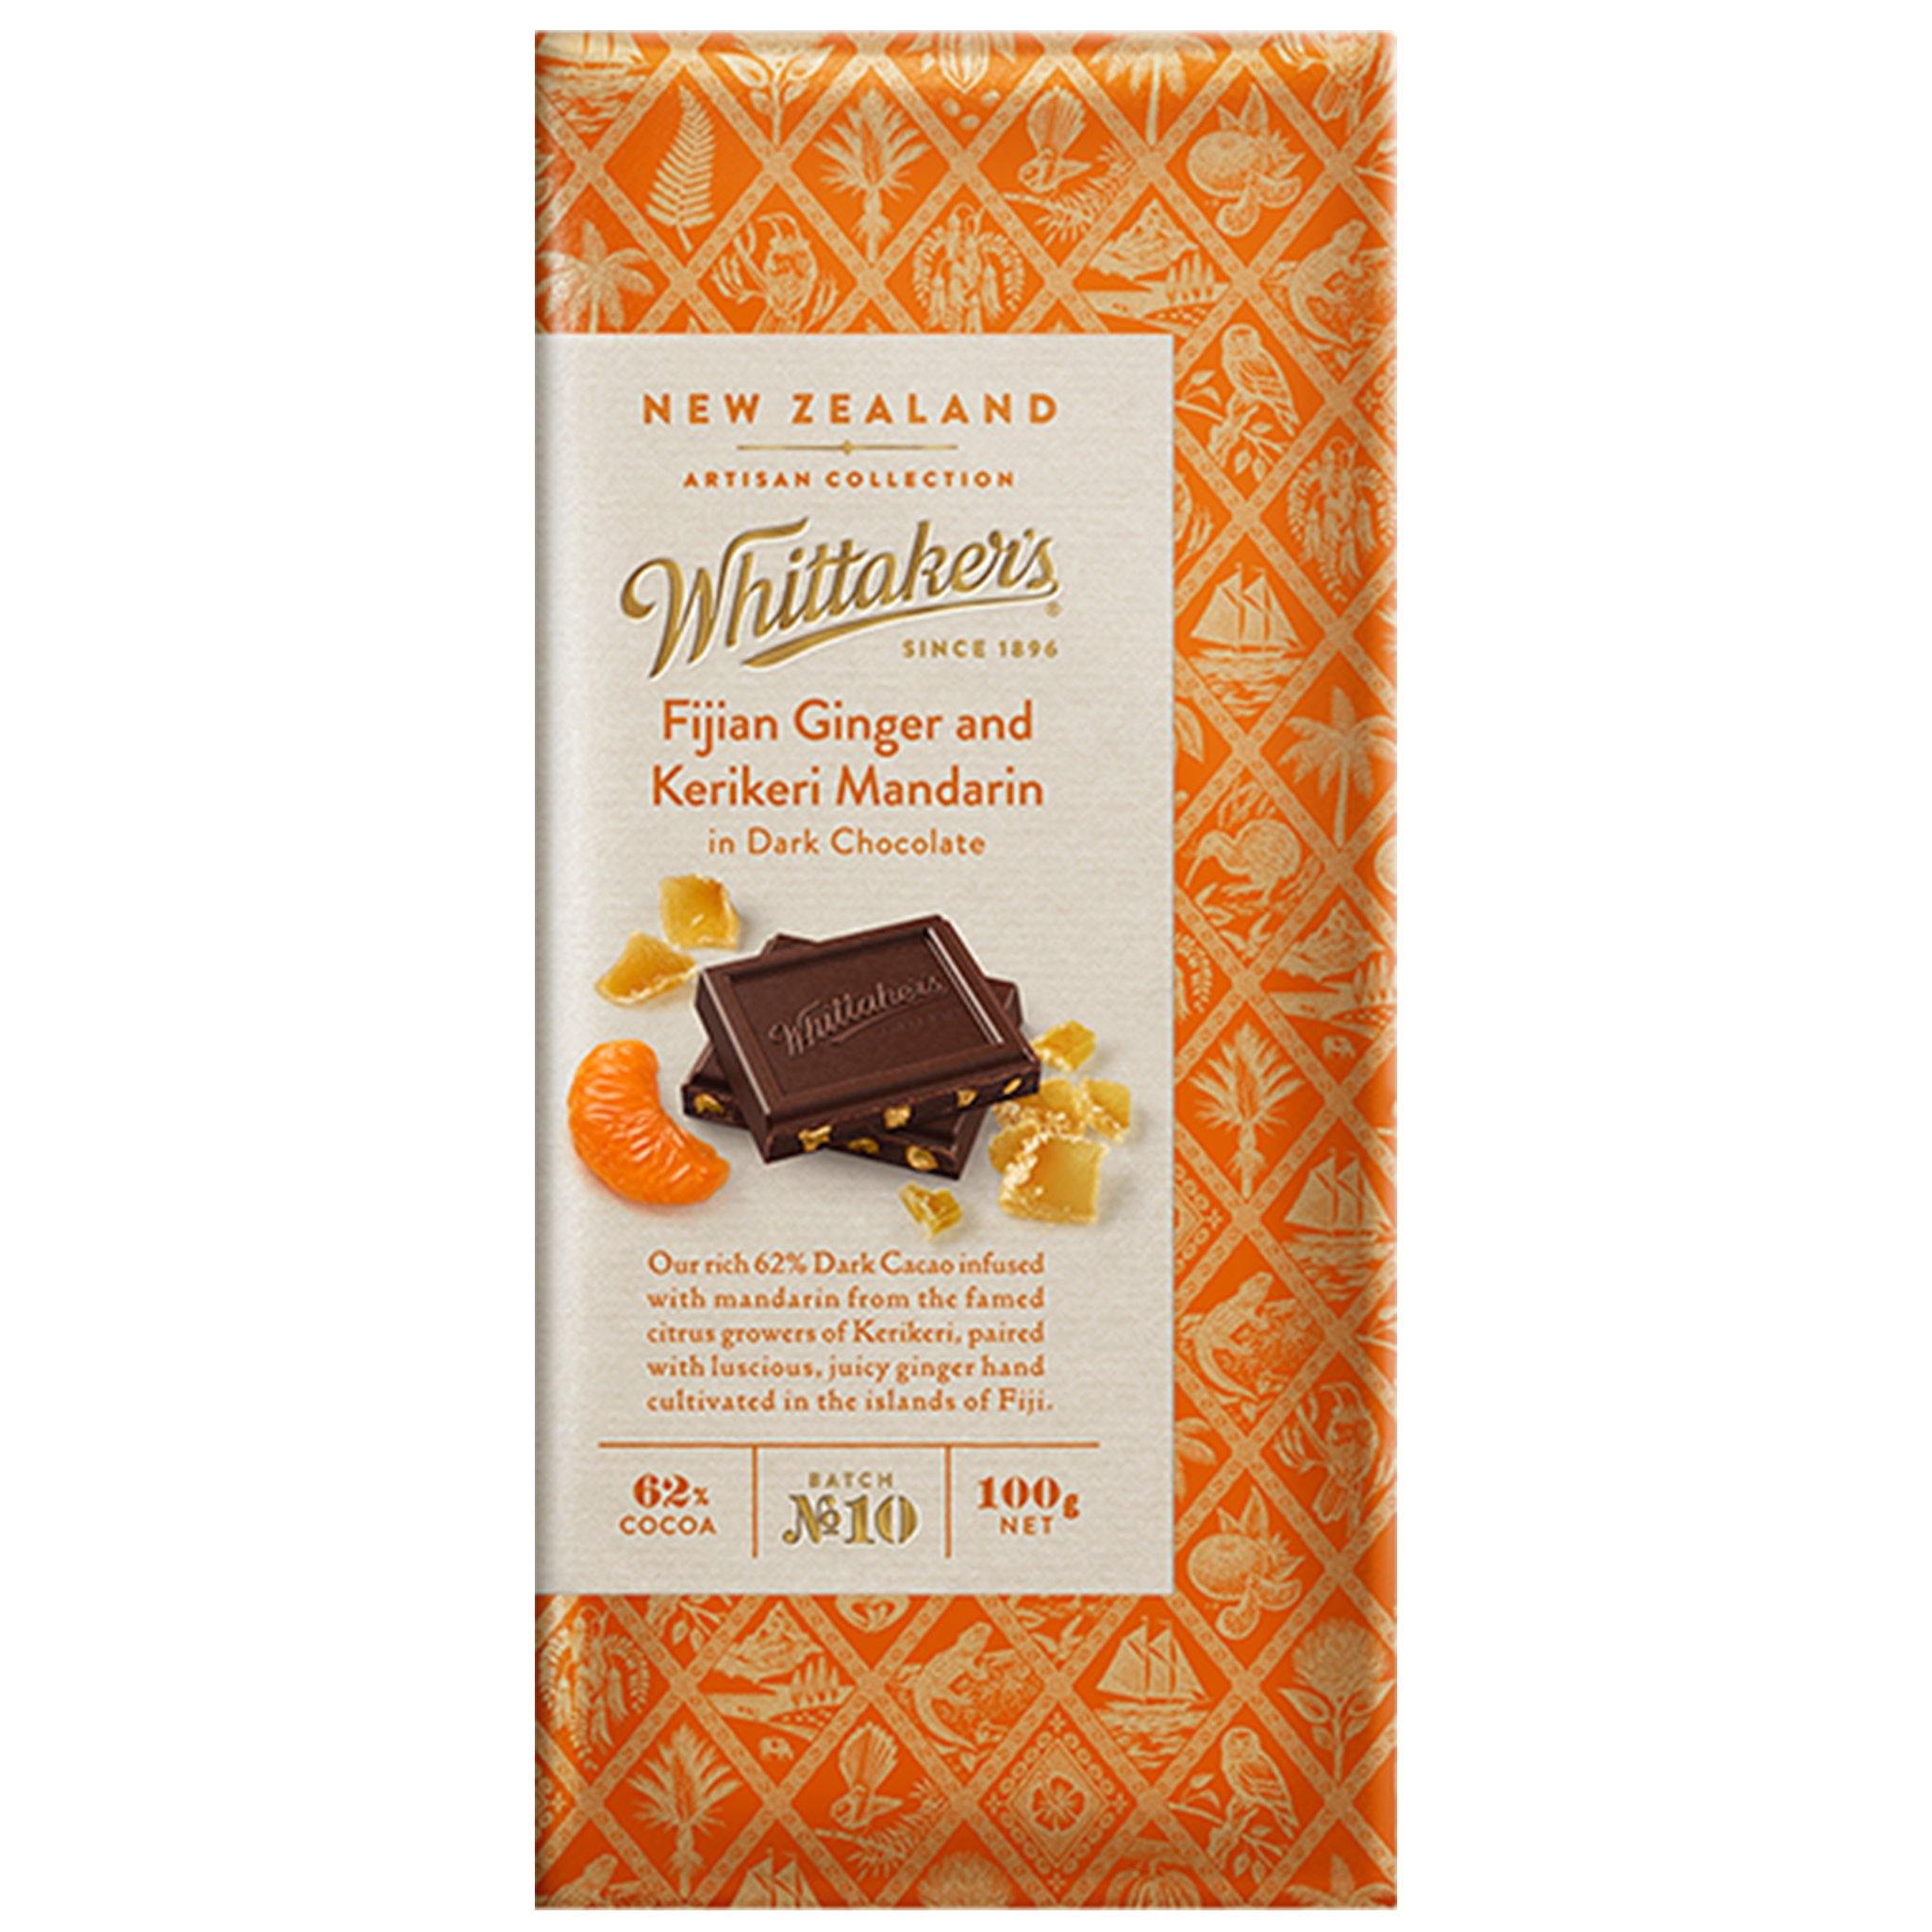 Whittakers Fijian Ginger & Kerikeri Mandarin Dark Chocolate - New Zealand - Sweet Exotics